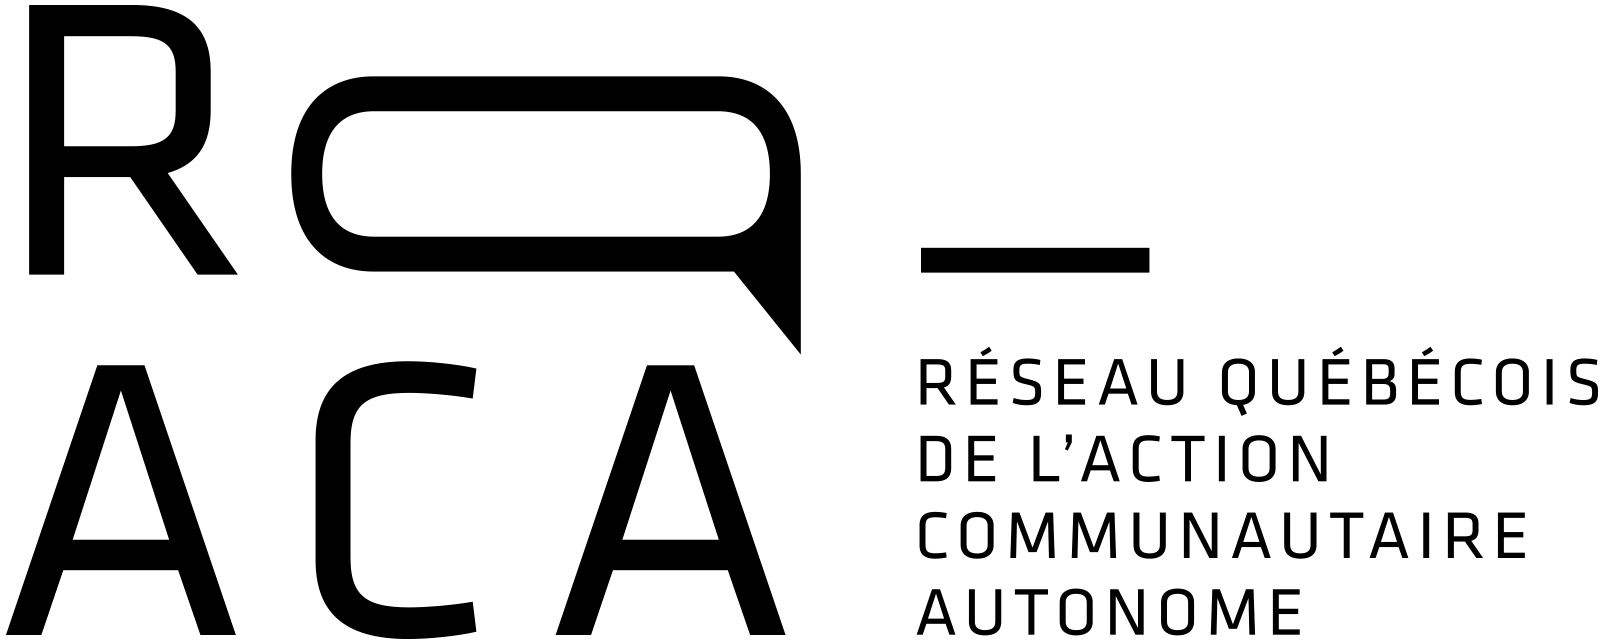 Logo RQ-ACA